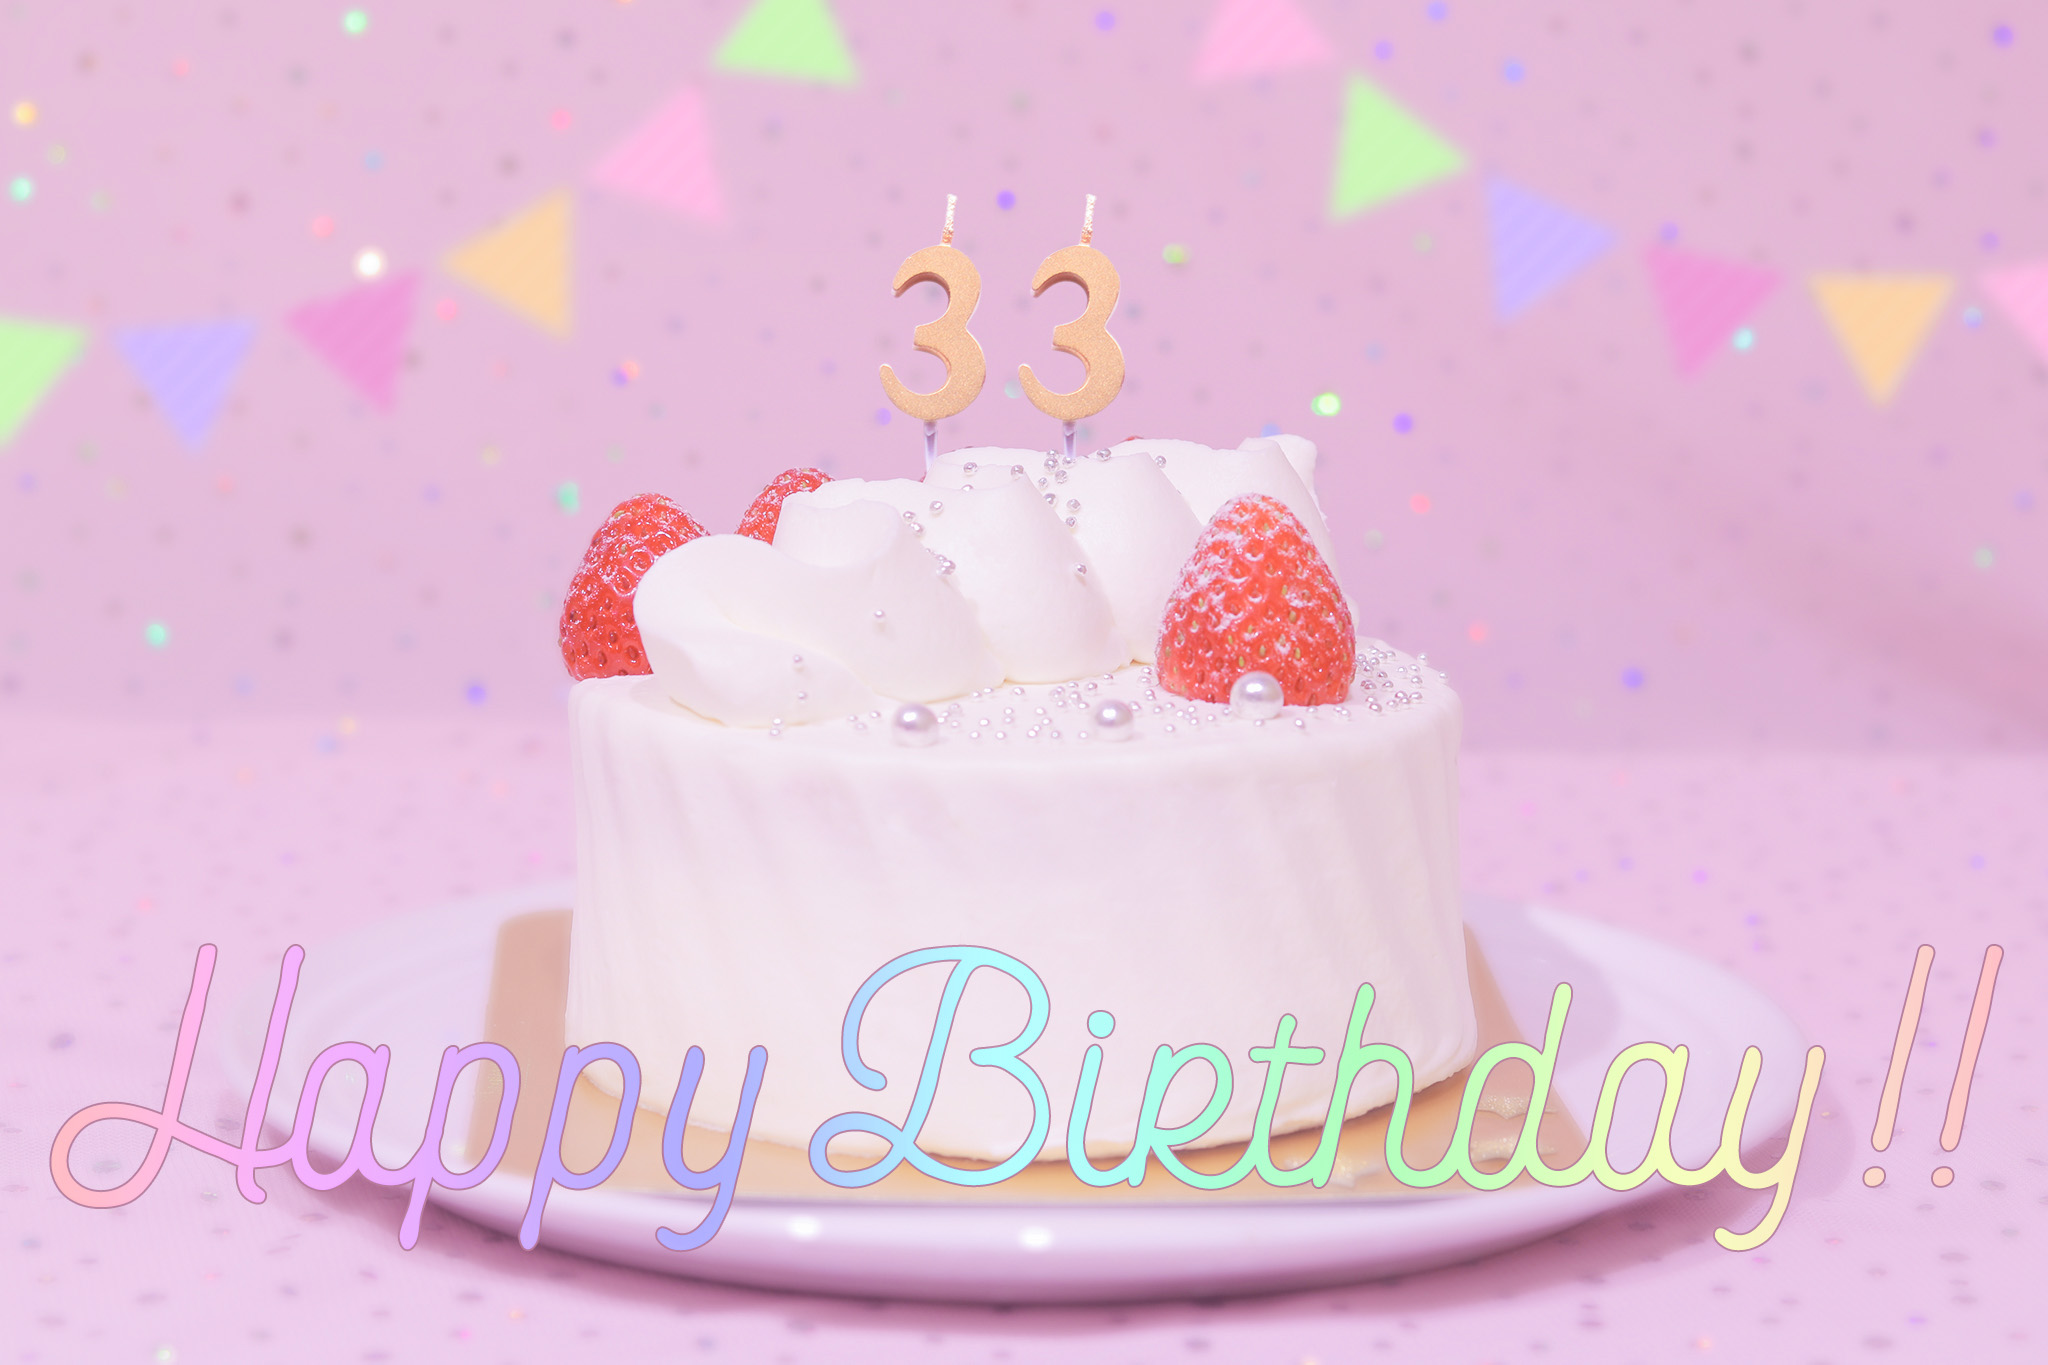 かわいい誕生日画像 ケーキとパステルカラーで可愛くお祝い 33歳編 のフリー画像 おしゃれなフリー写真素材 Girly Drop